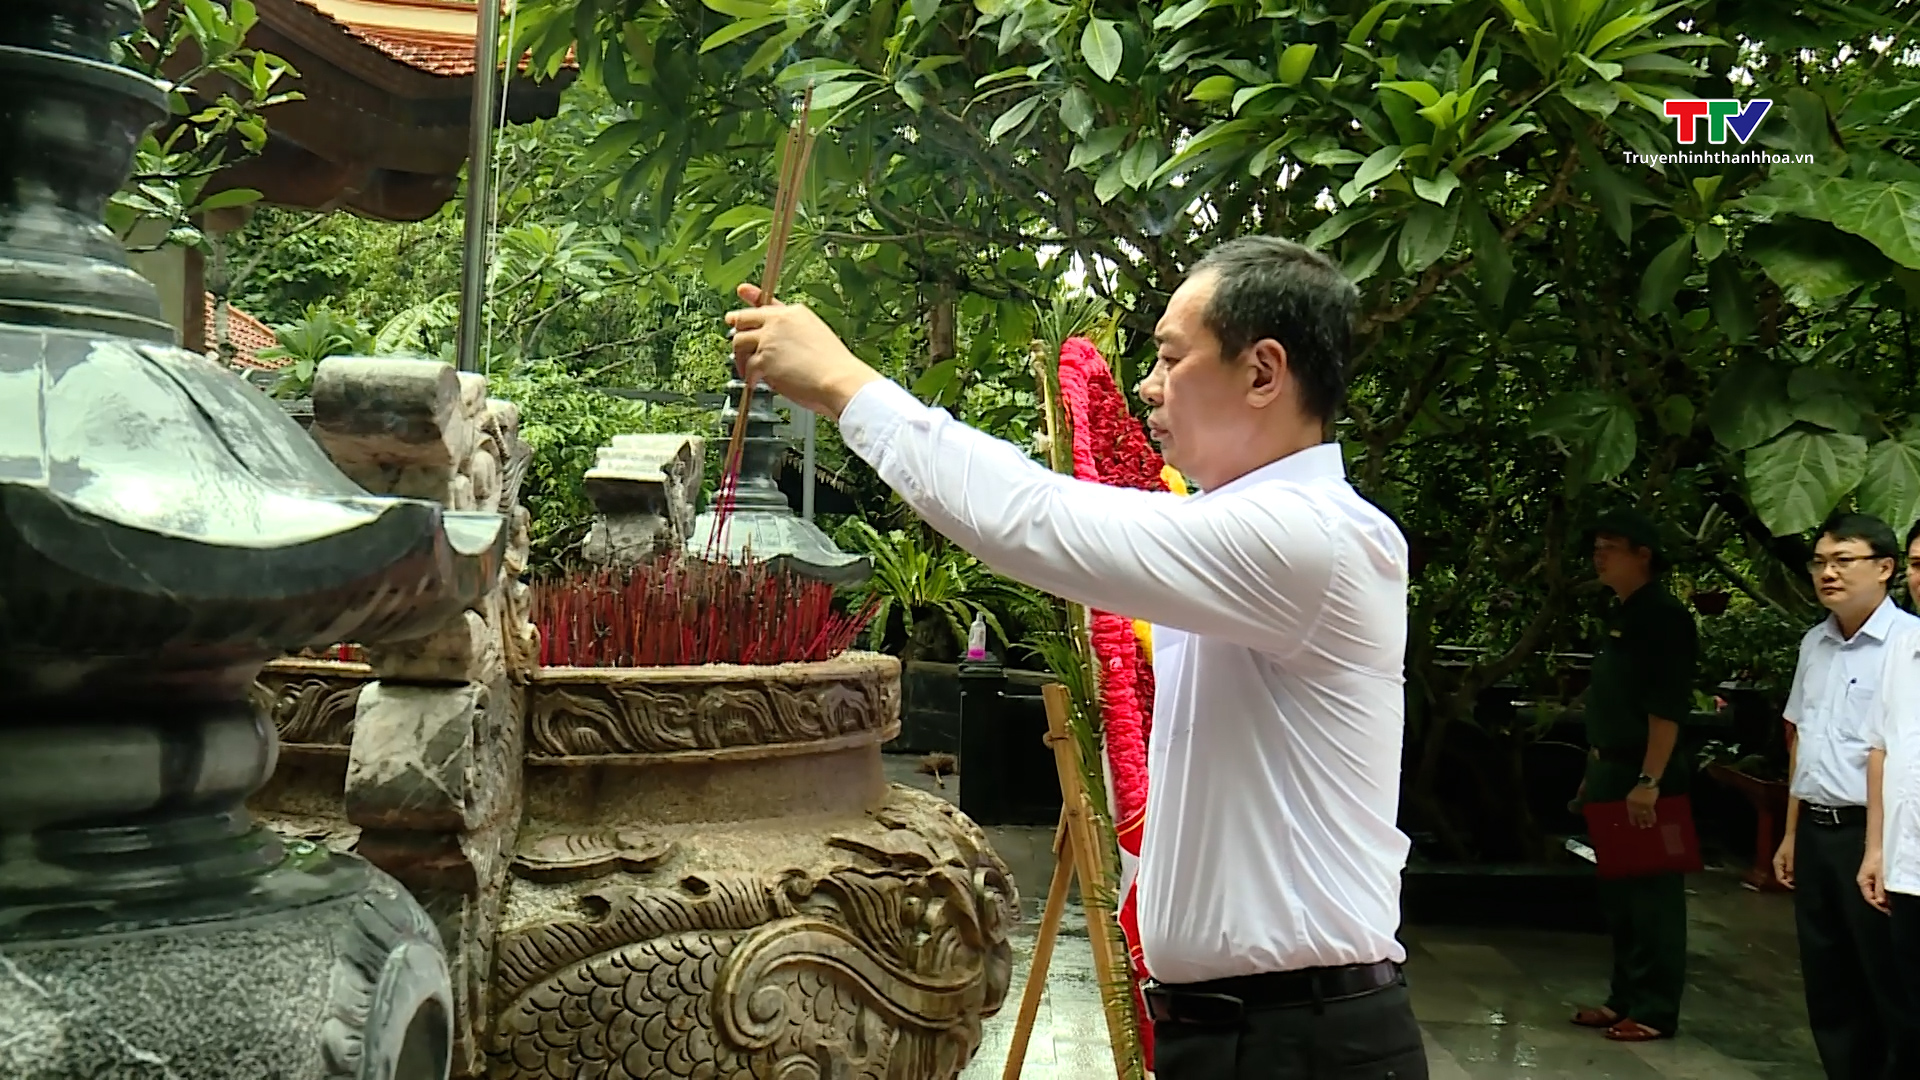 Đồng chí Phó Bí thư Tỉnh ủy Trịnh Tuấn Sinh dâng hương các liệt sỹ đang yên nghỉ tại Quảng Bình và Quảng Trị- Ảnh 2.